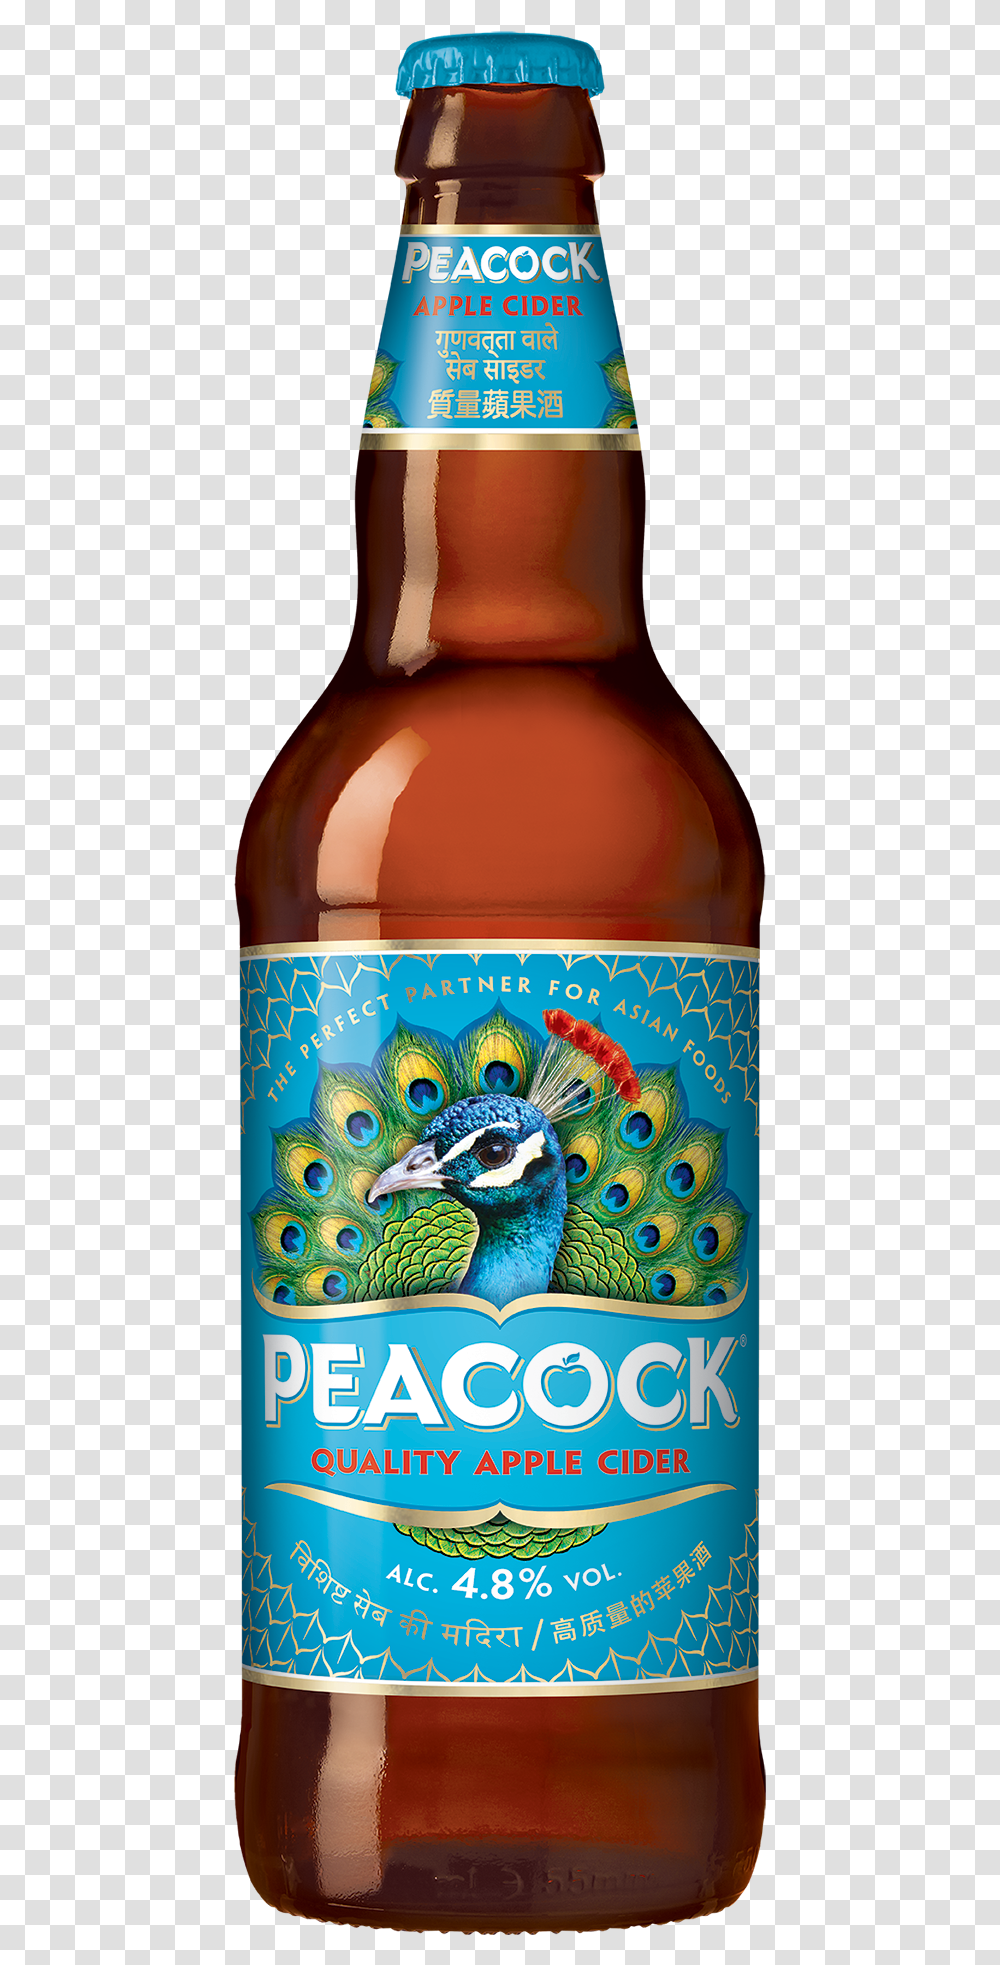 Kingfisher Beer Bottle Peacock Apple Cider, Alcohol, Beverage, Drink, Lager Transparent Png